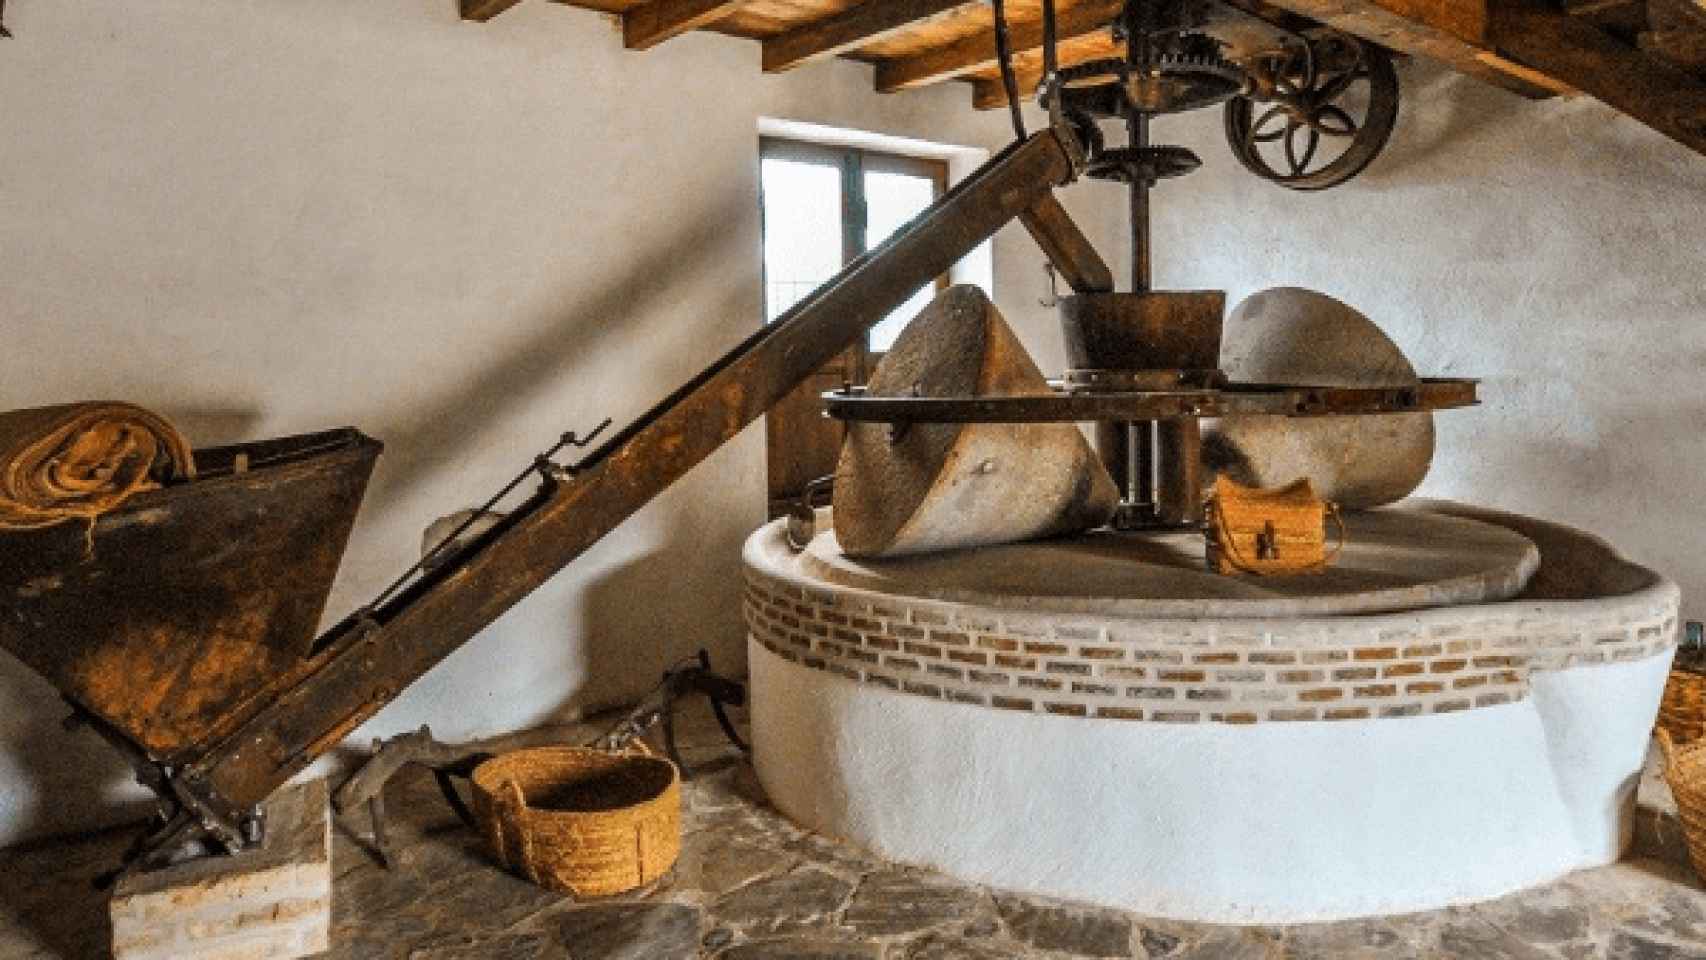 Muchas almazaras conservan maquinaria antigua que se puede visitar